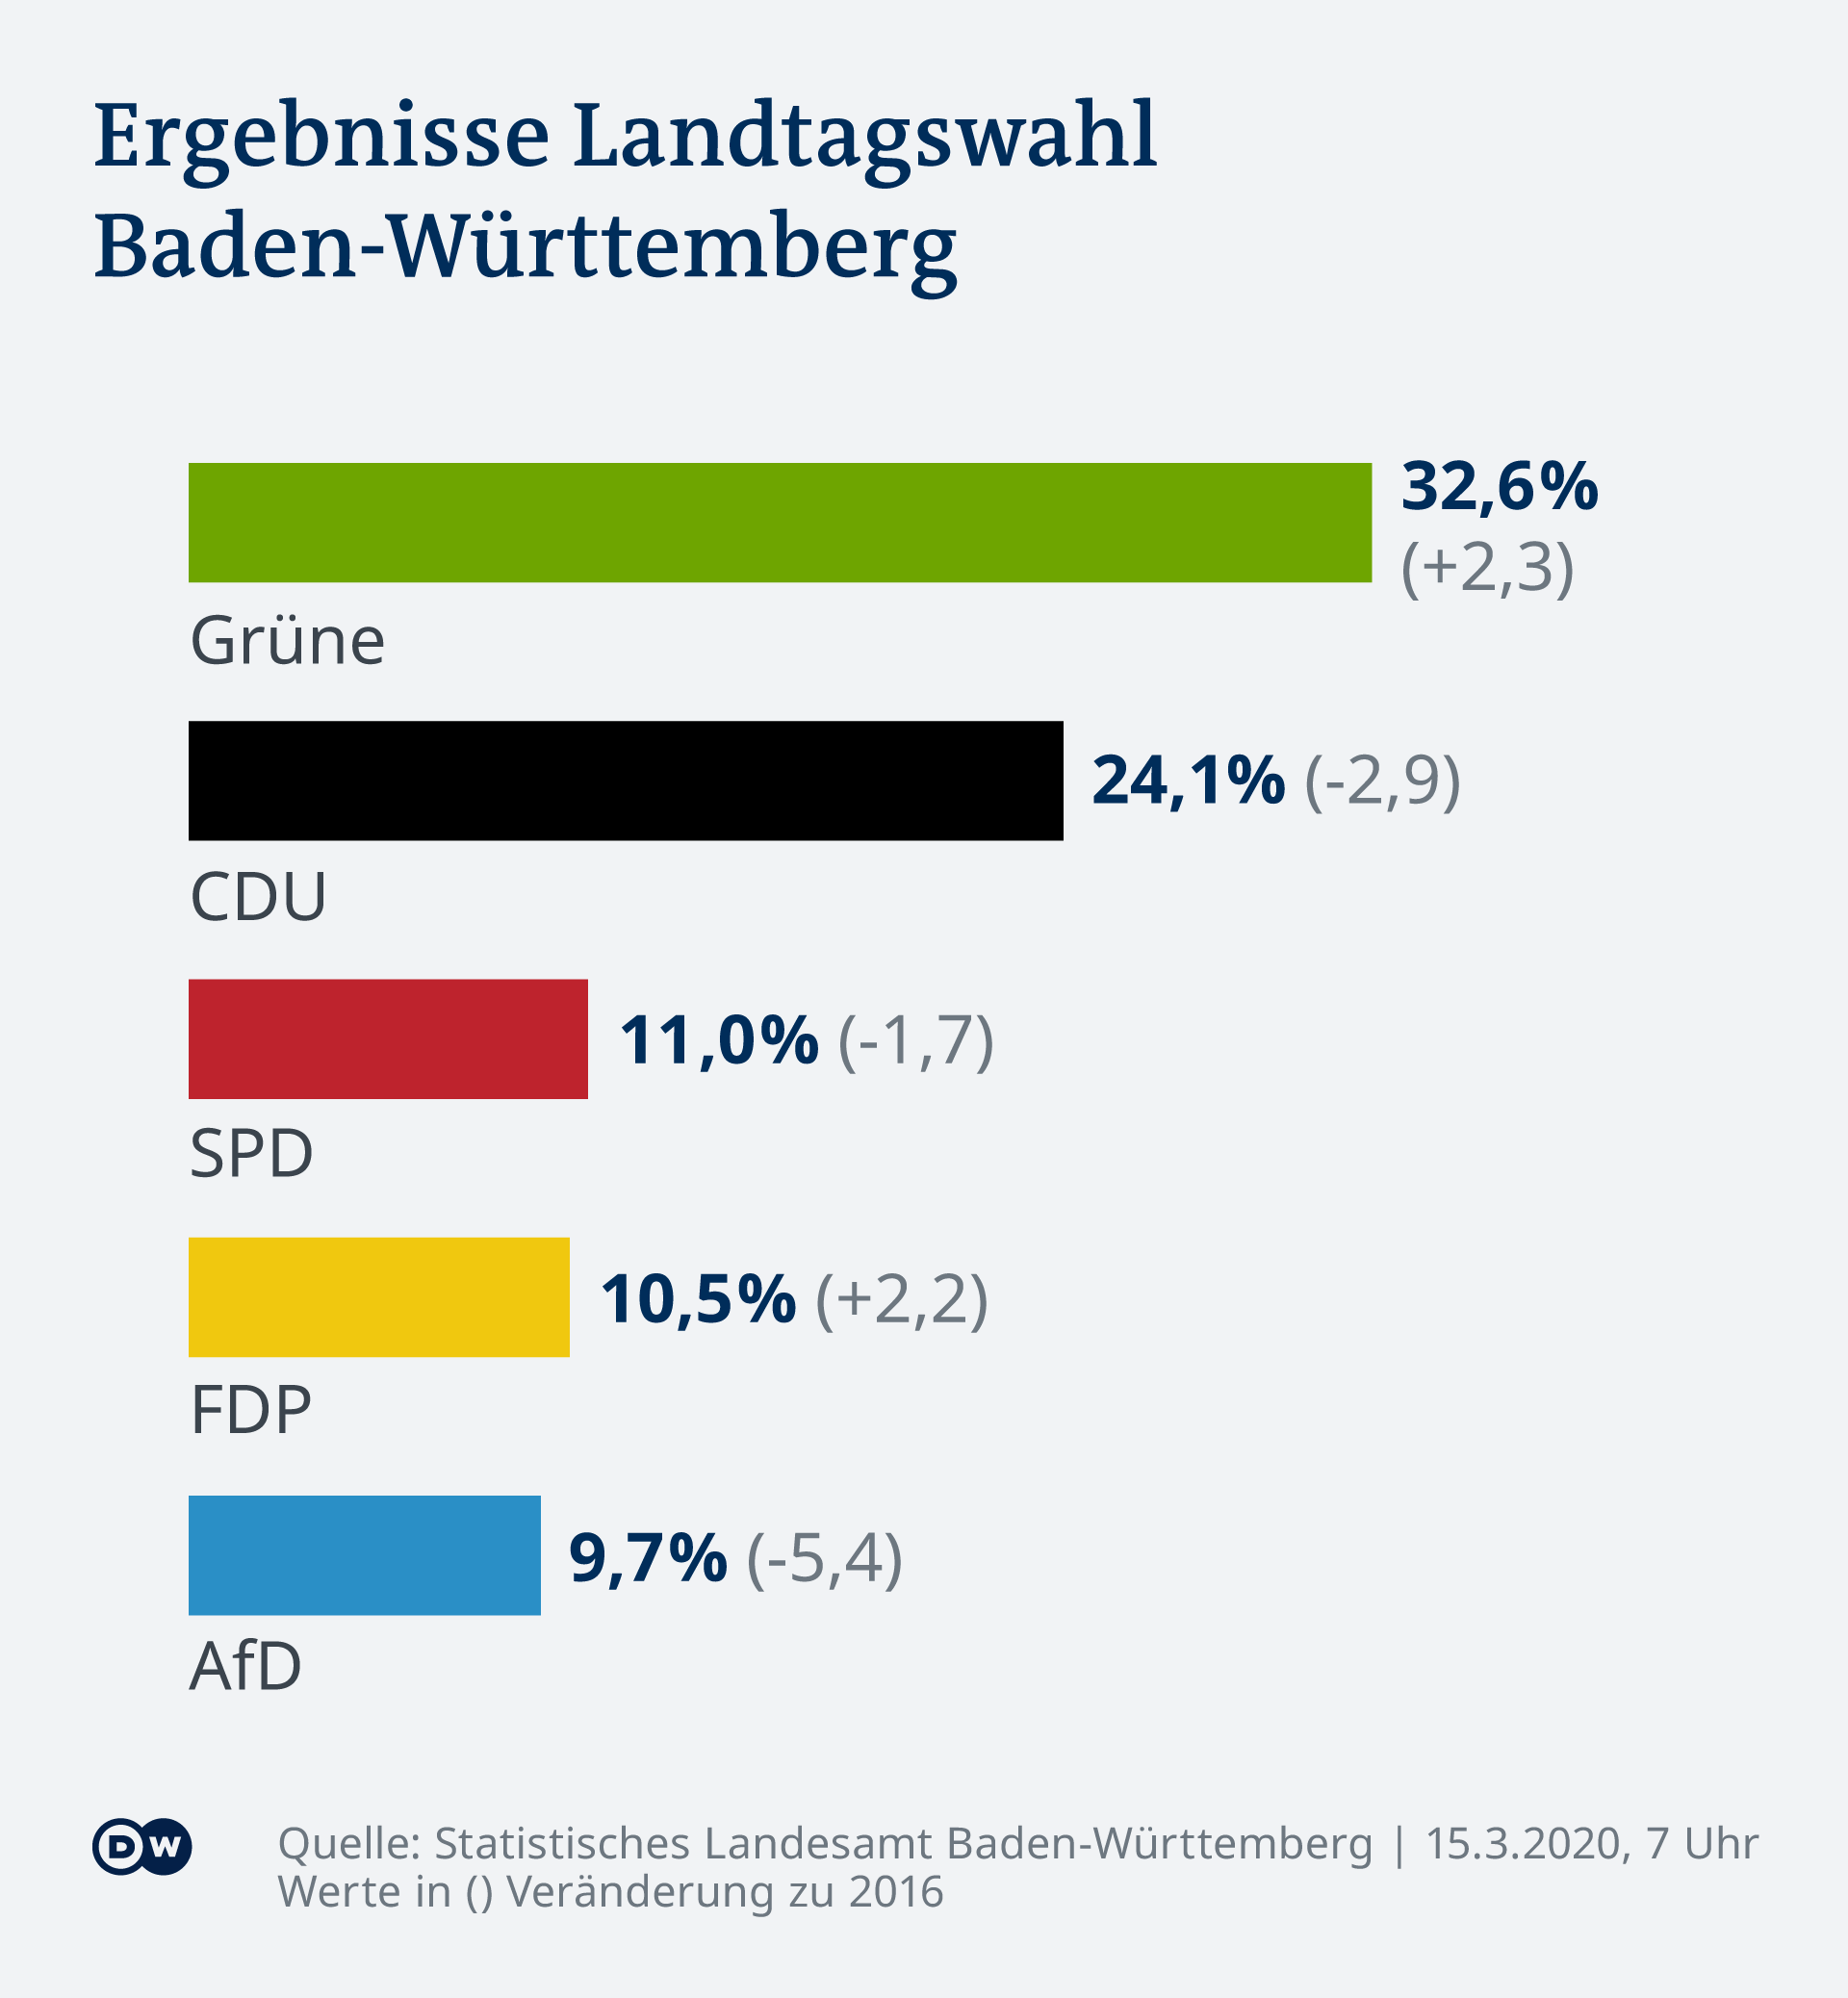 Dans le Bade-Wurtemberg, die Grünen, les Verts, ont consolidé leur score